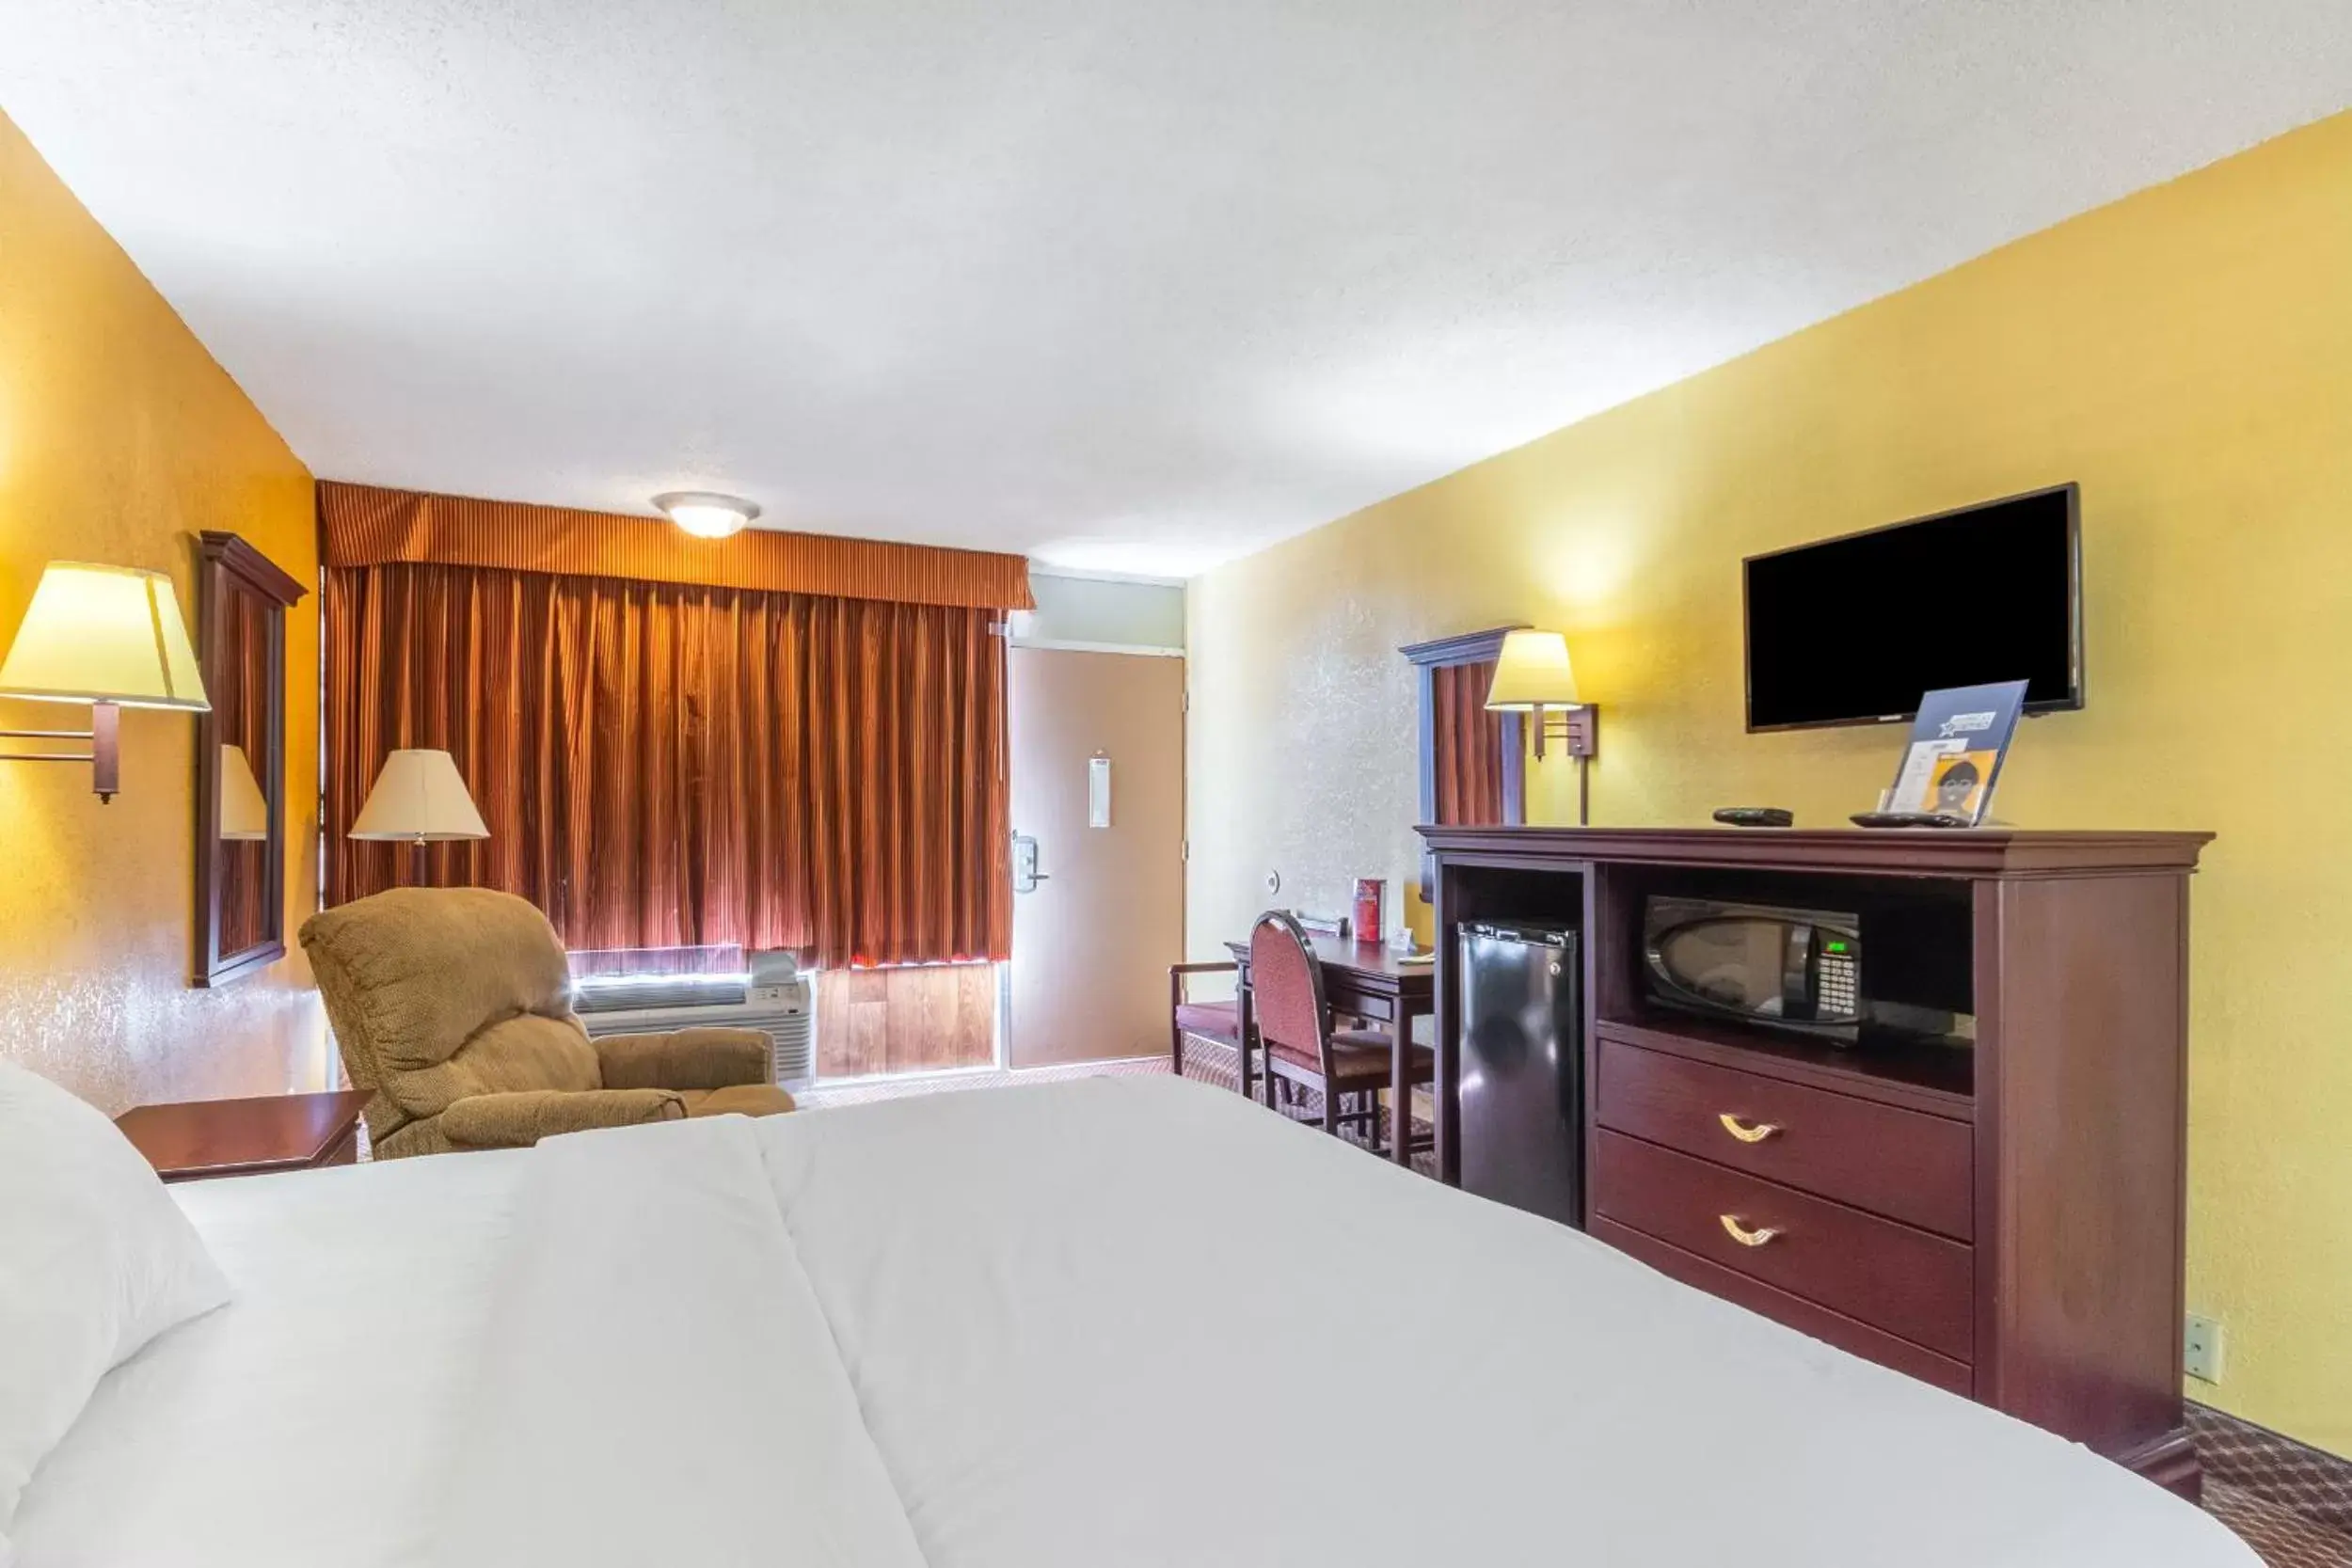 Bedroom, Bed in Americas Best Value Inn of Elk City